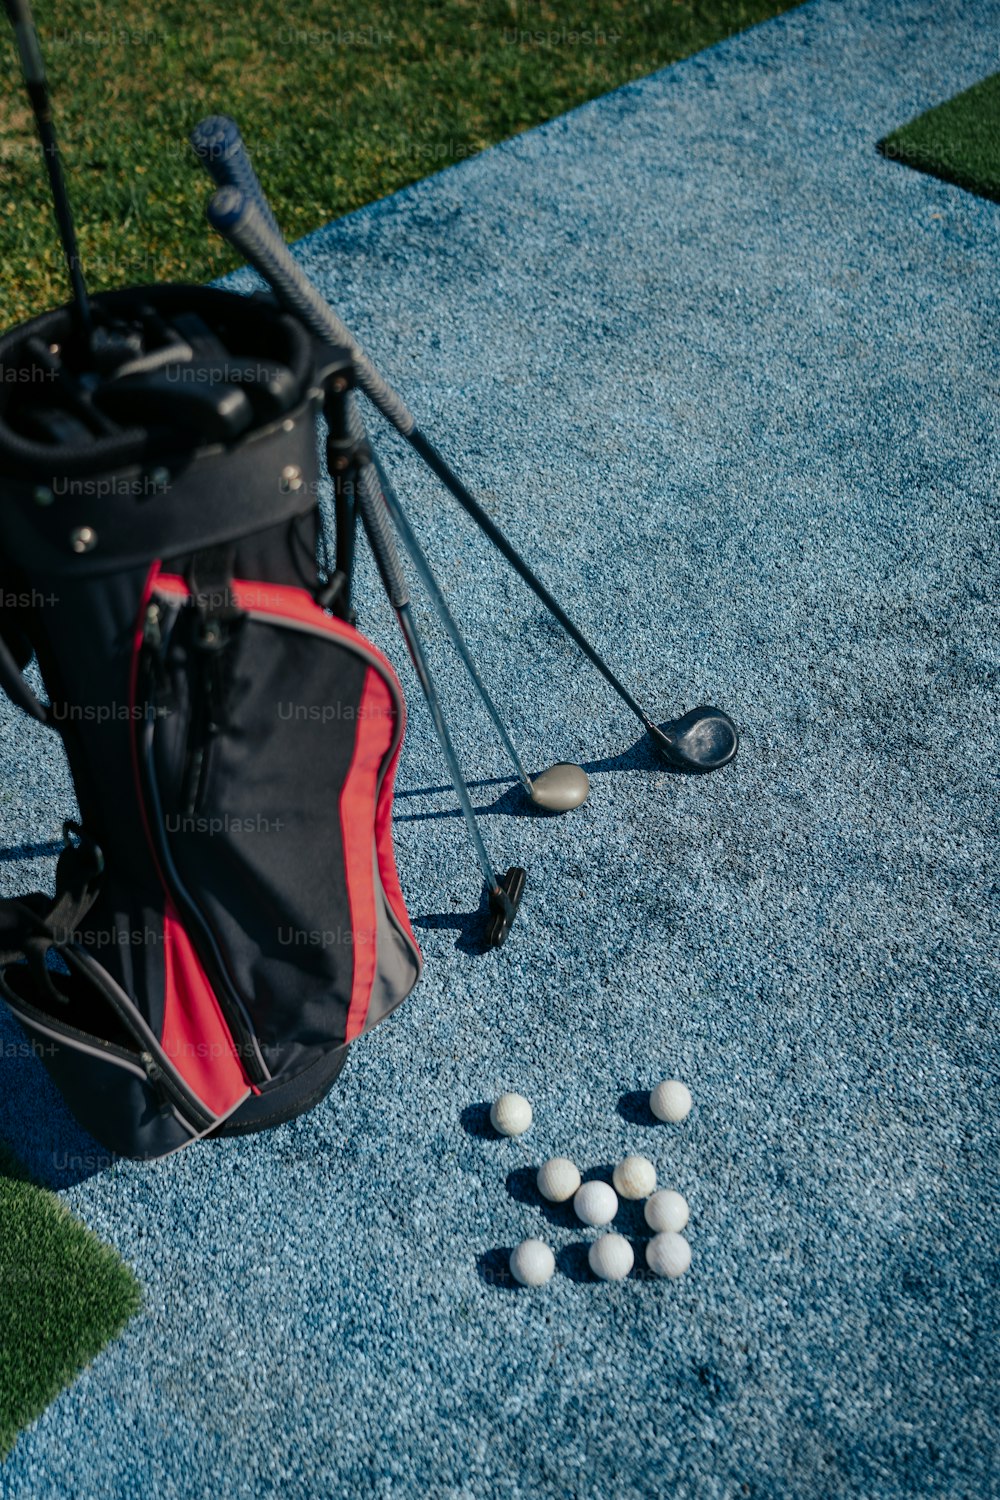 um saco de bolas de golfe sentado no chão ao lado de um taco de golfe